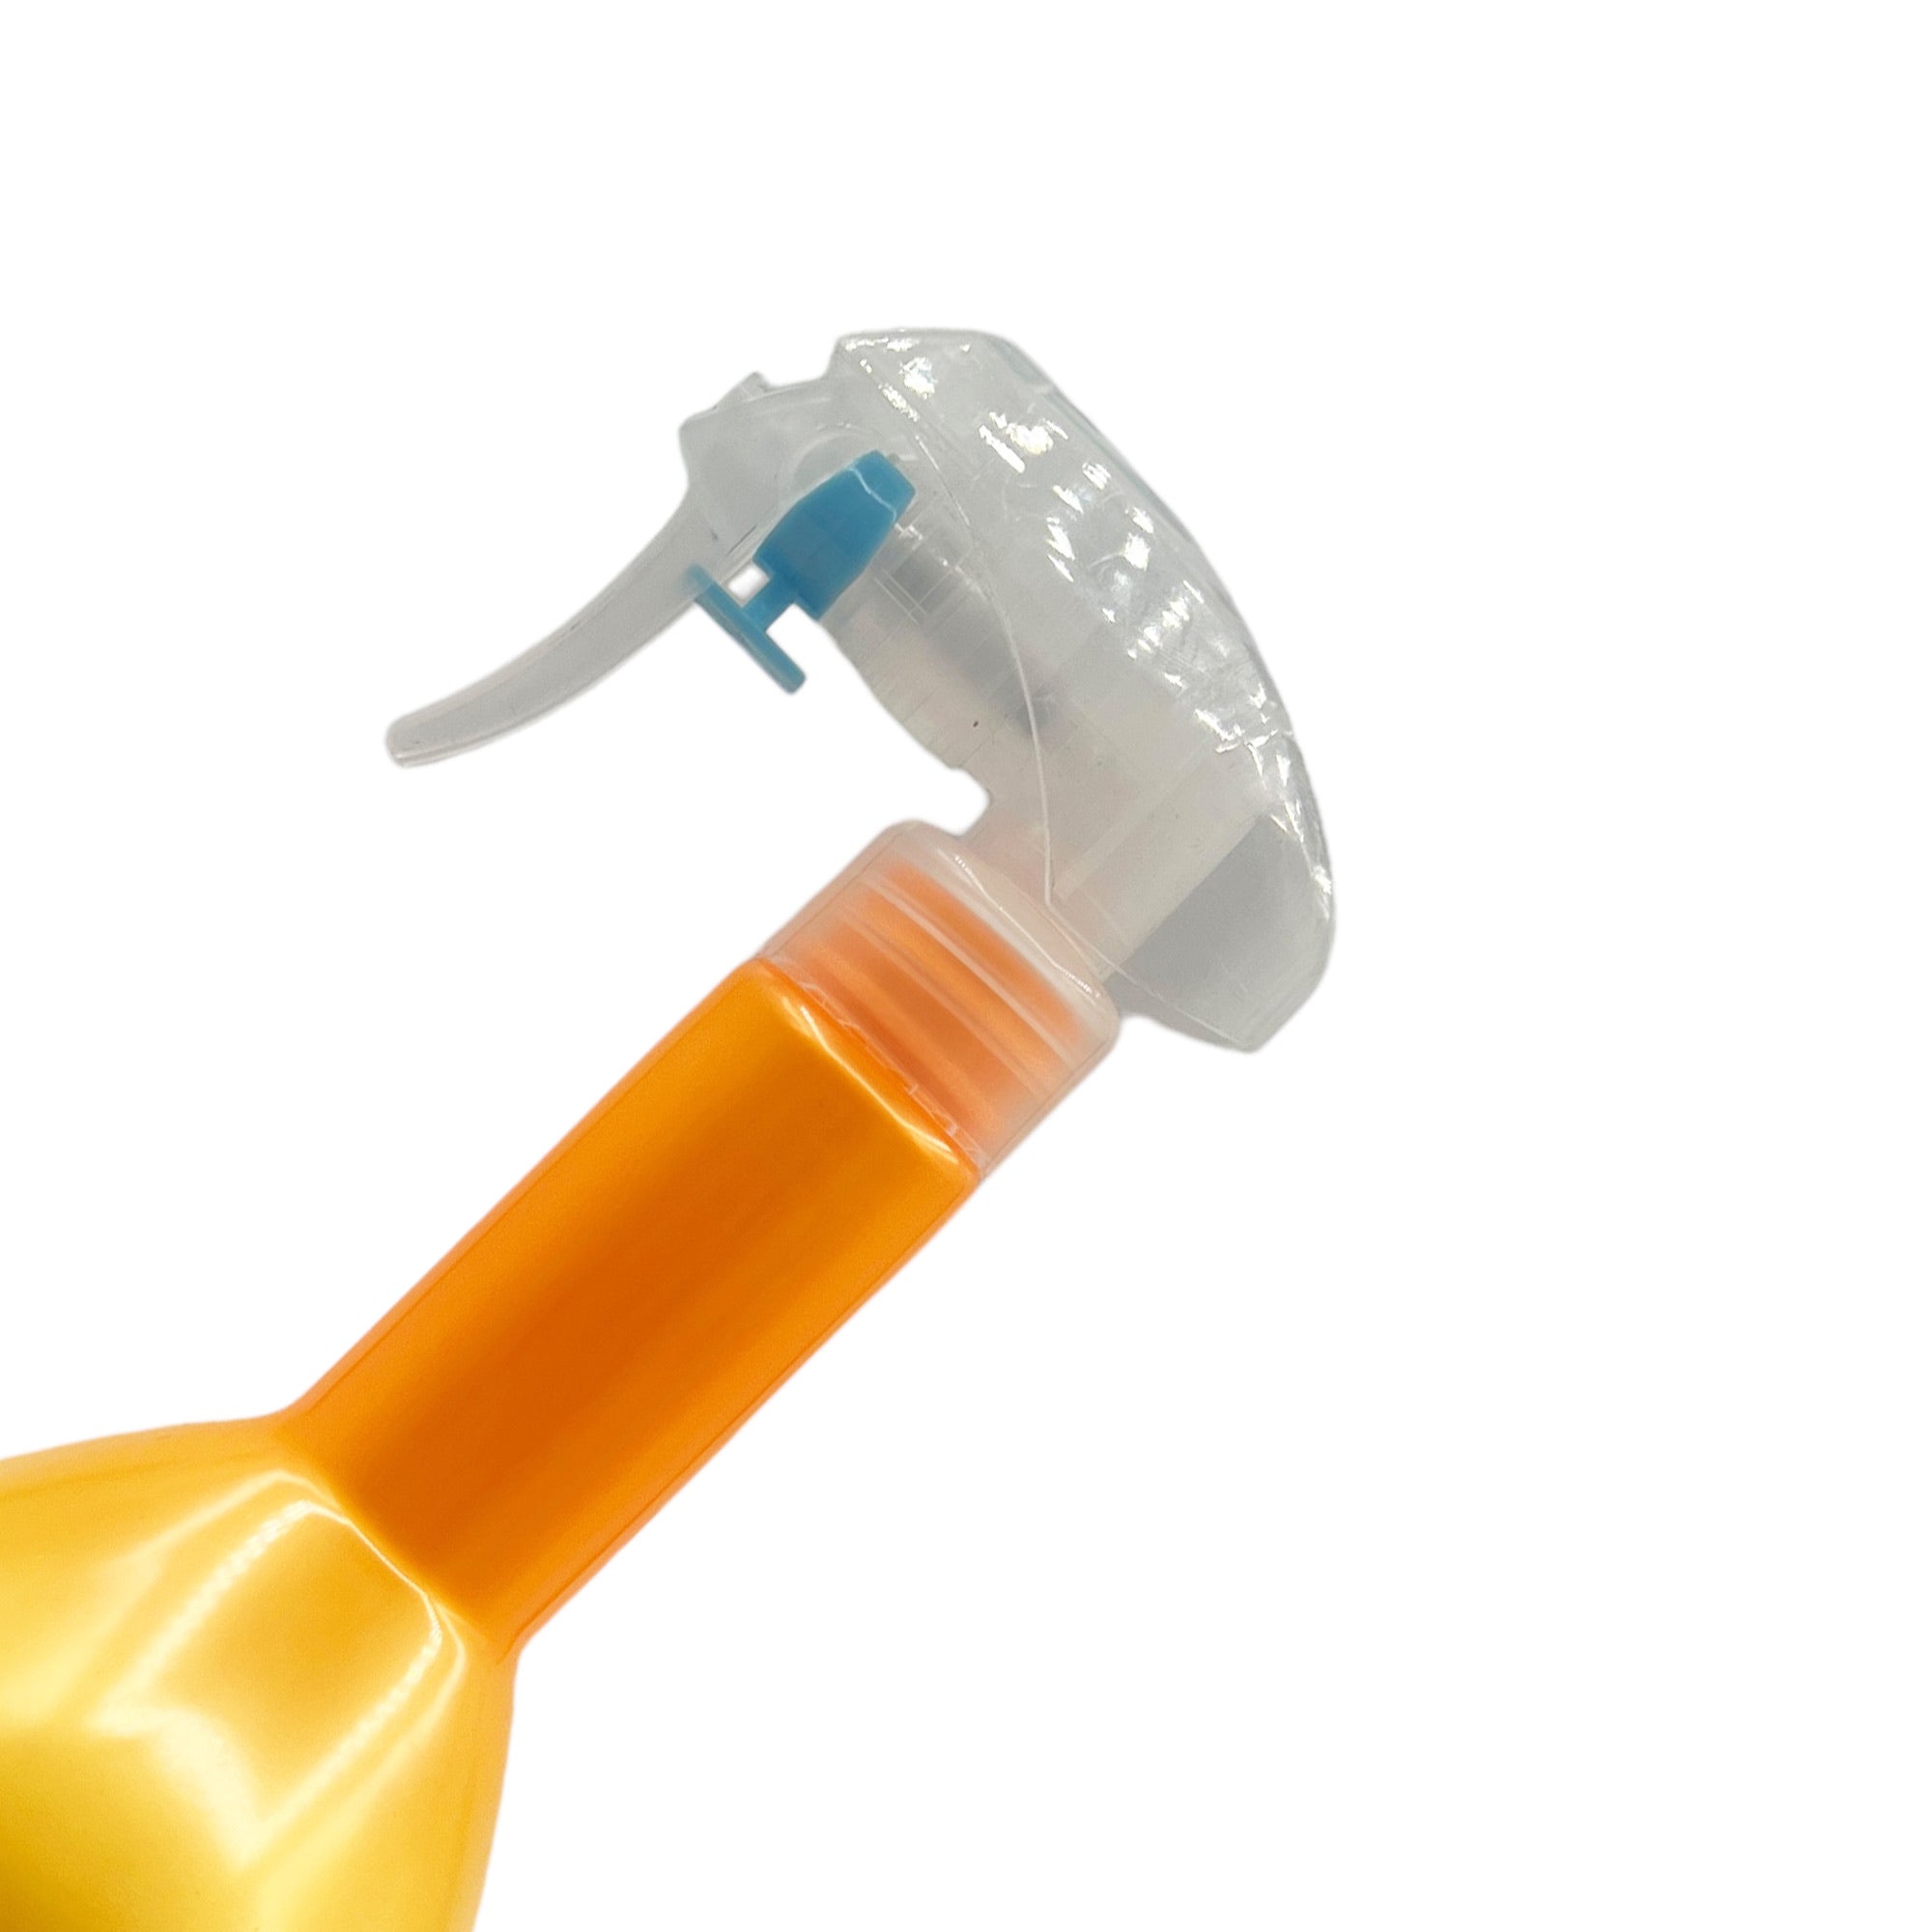 Eson - Water Spray Bottle 300ml Round Empty Refillable Ultra Fine Mist Sprayer (Orange)